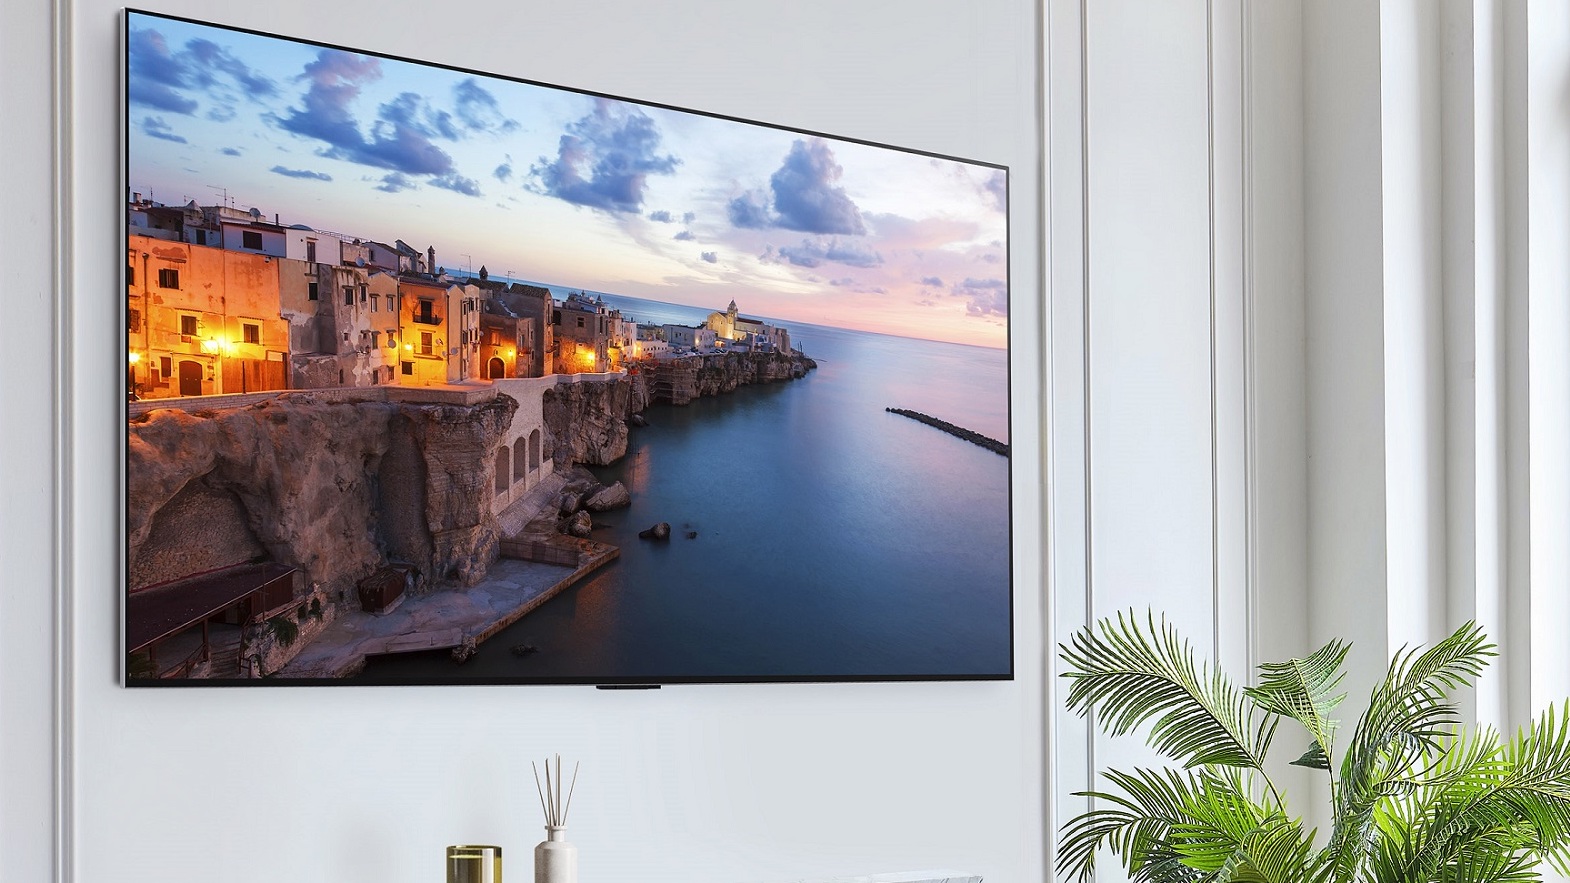 LG G3 OLED TV: novedades y todo lo que necesitas saber